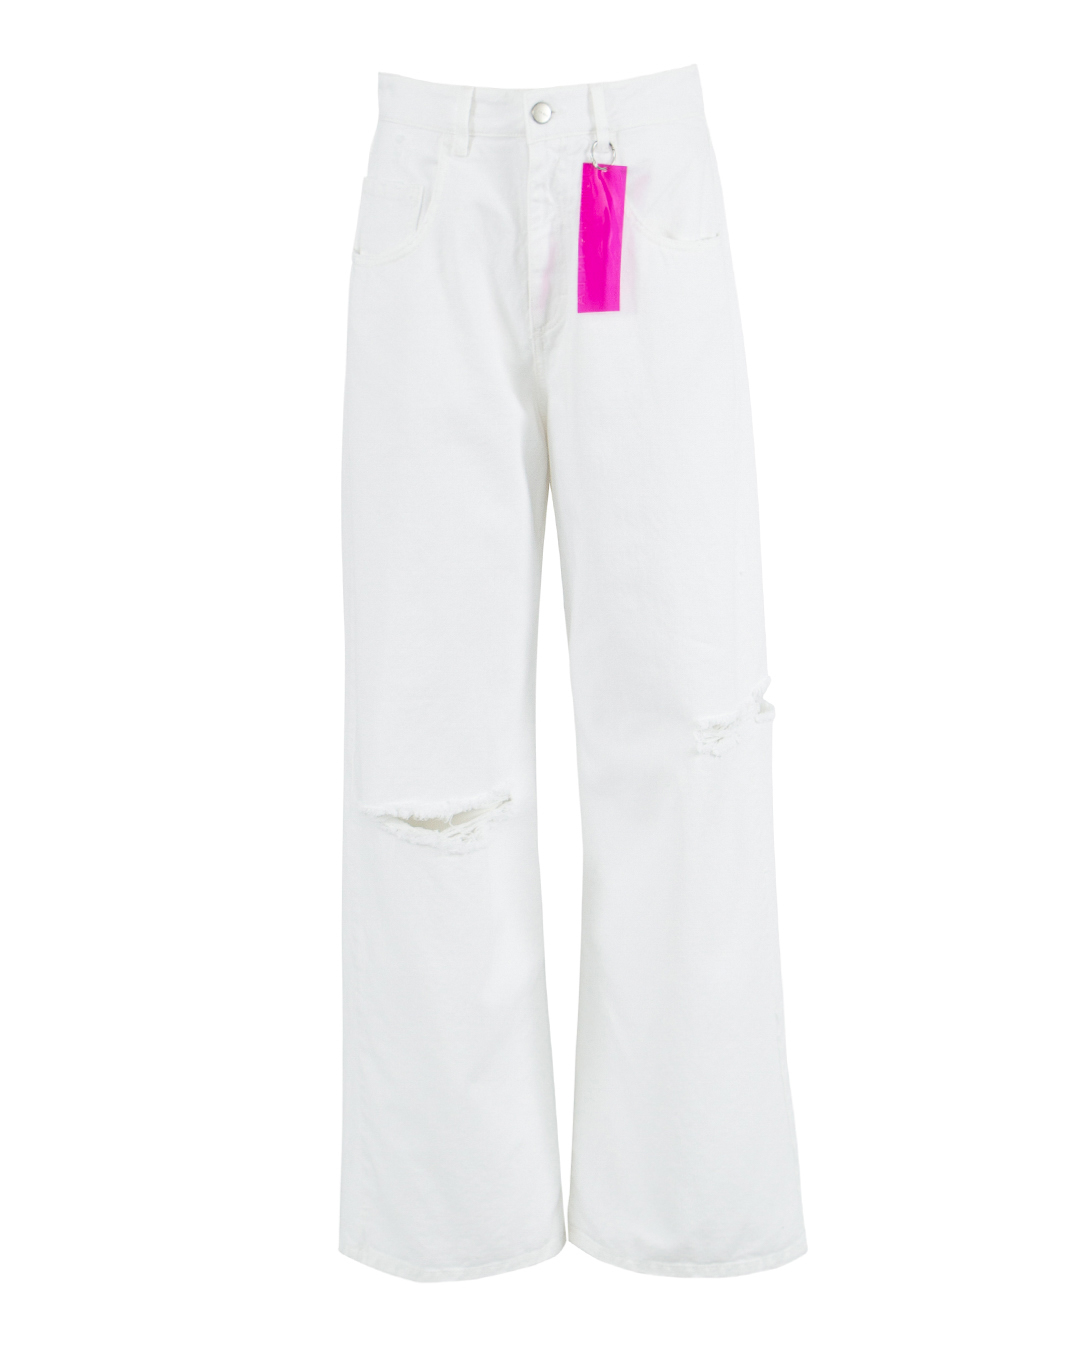 джинсы ICON DENIM POPPYID779 белый 25, размер 25 - фото 1